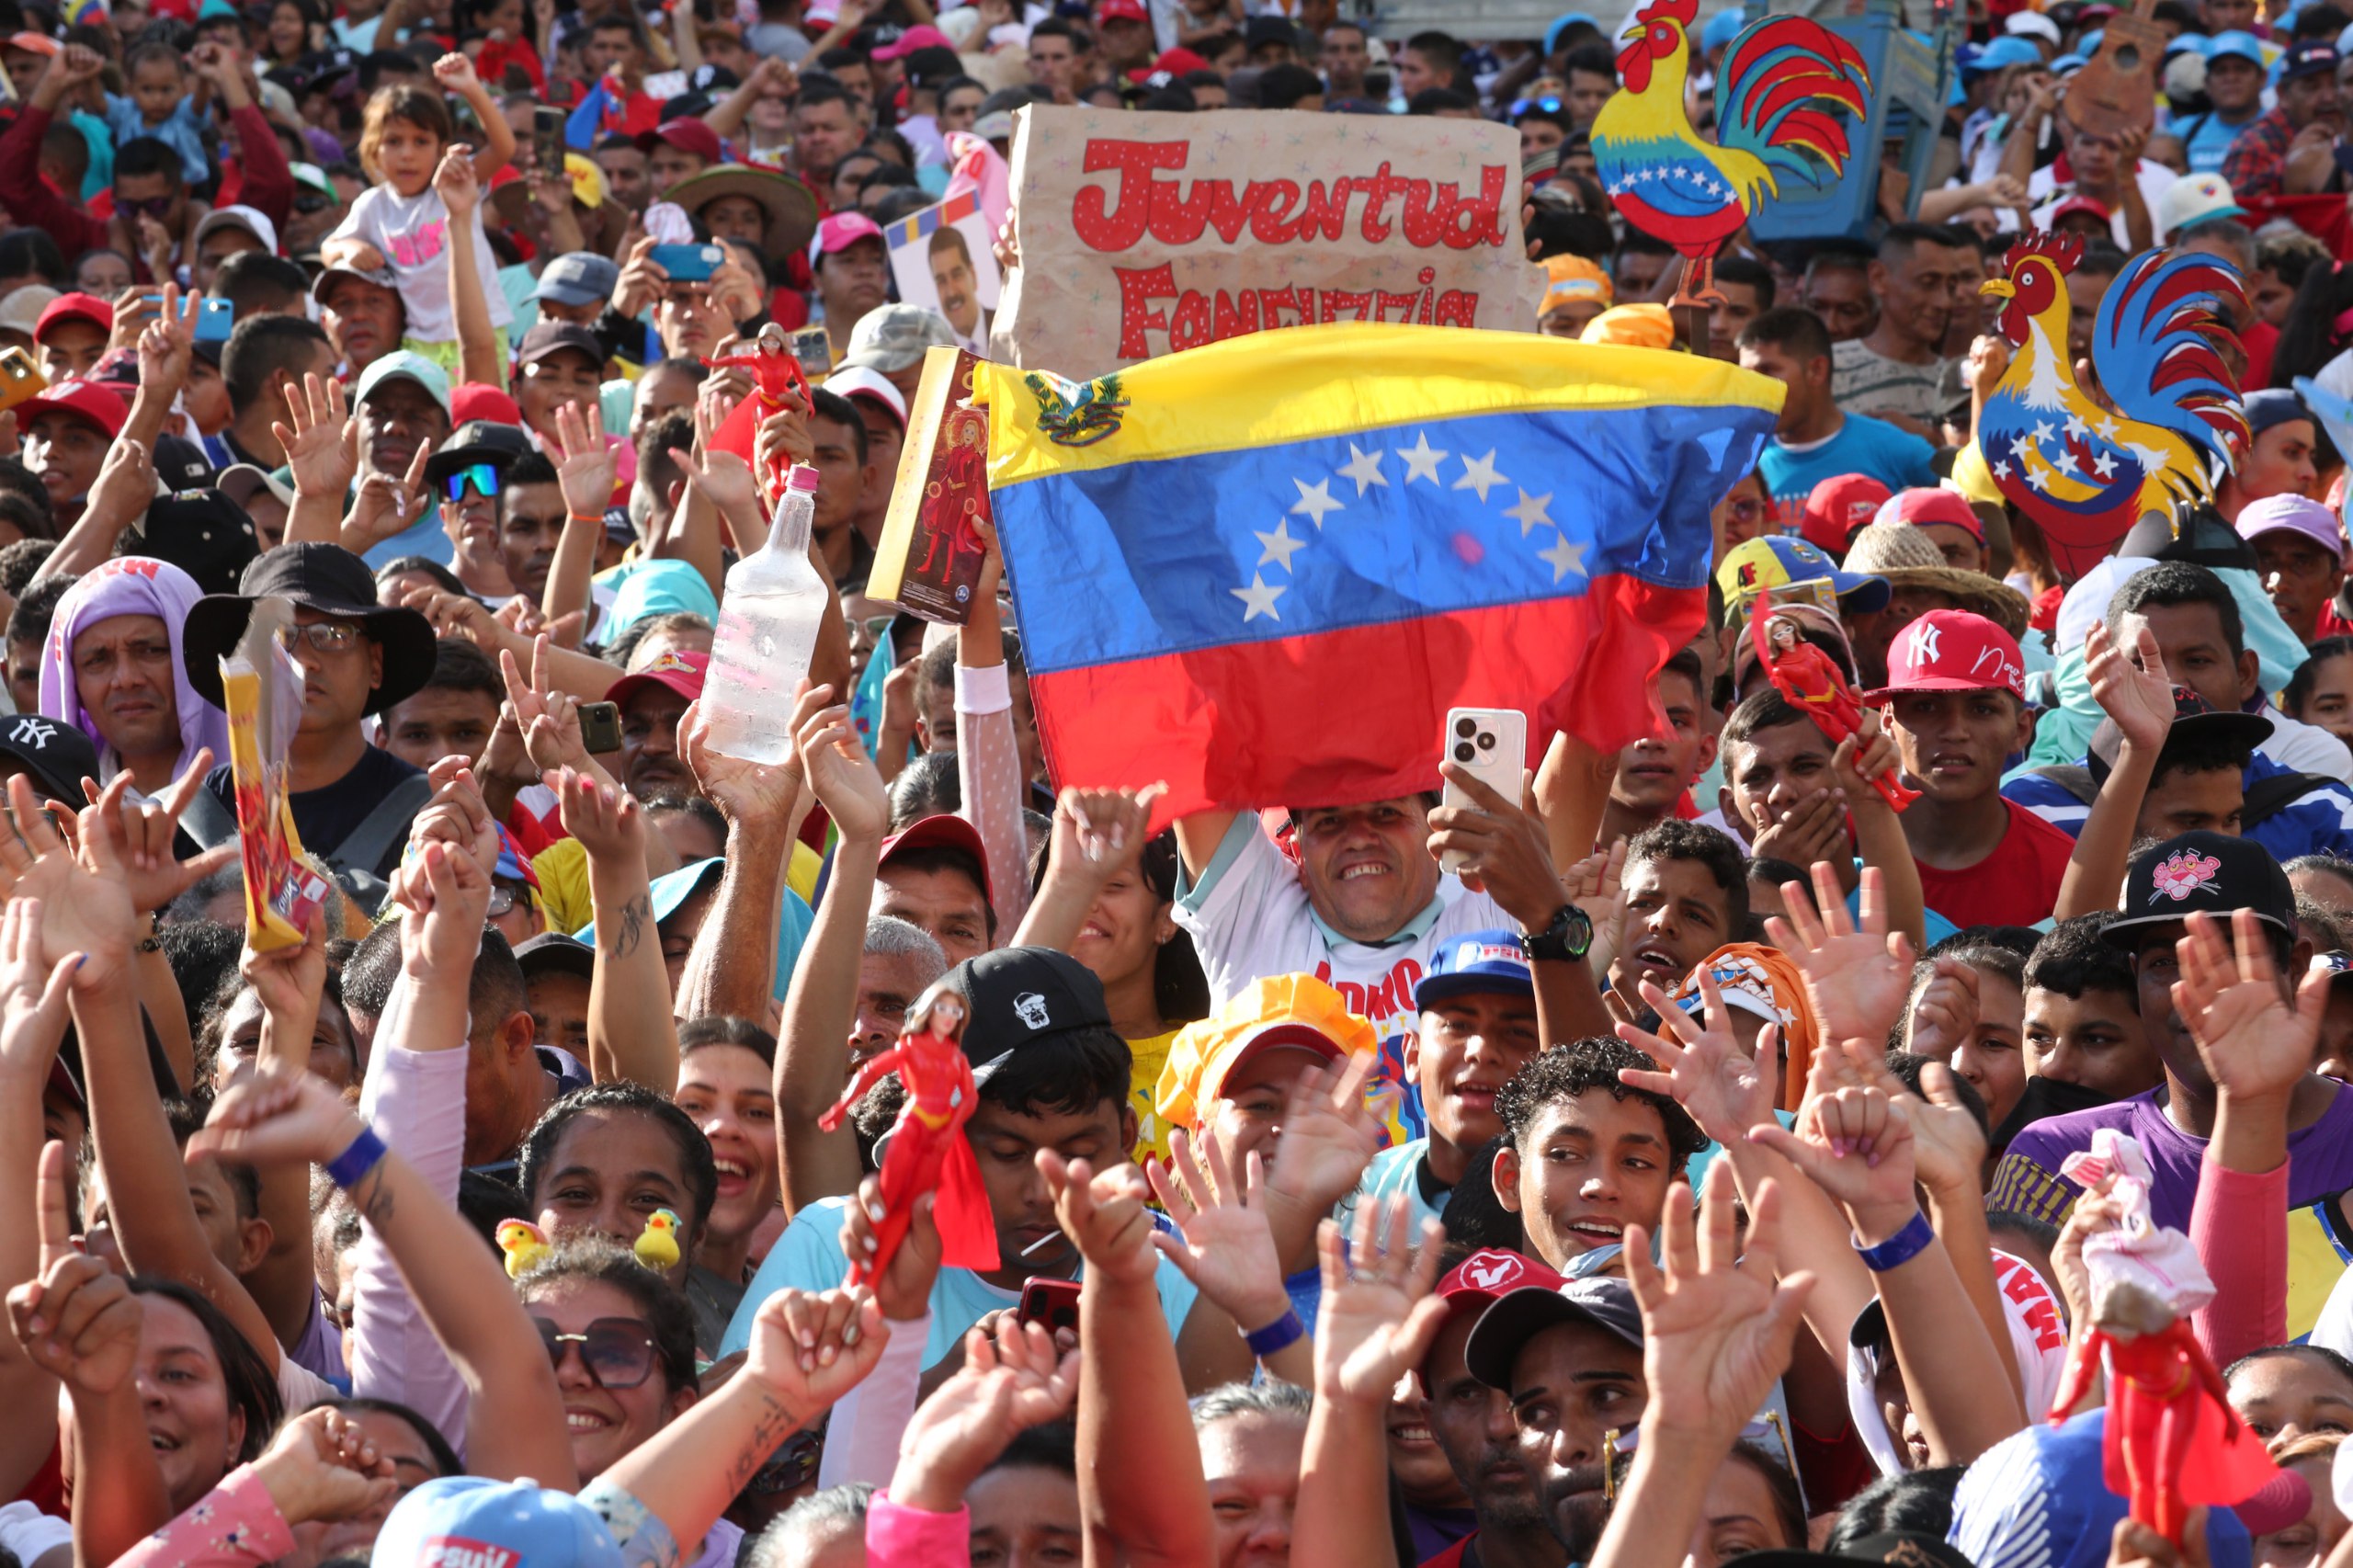 ‘Oposição venezuelana tenta criar clima de fraude em processo eleitoral pacífico’, afirma cientista político